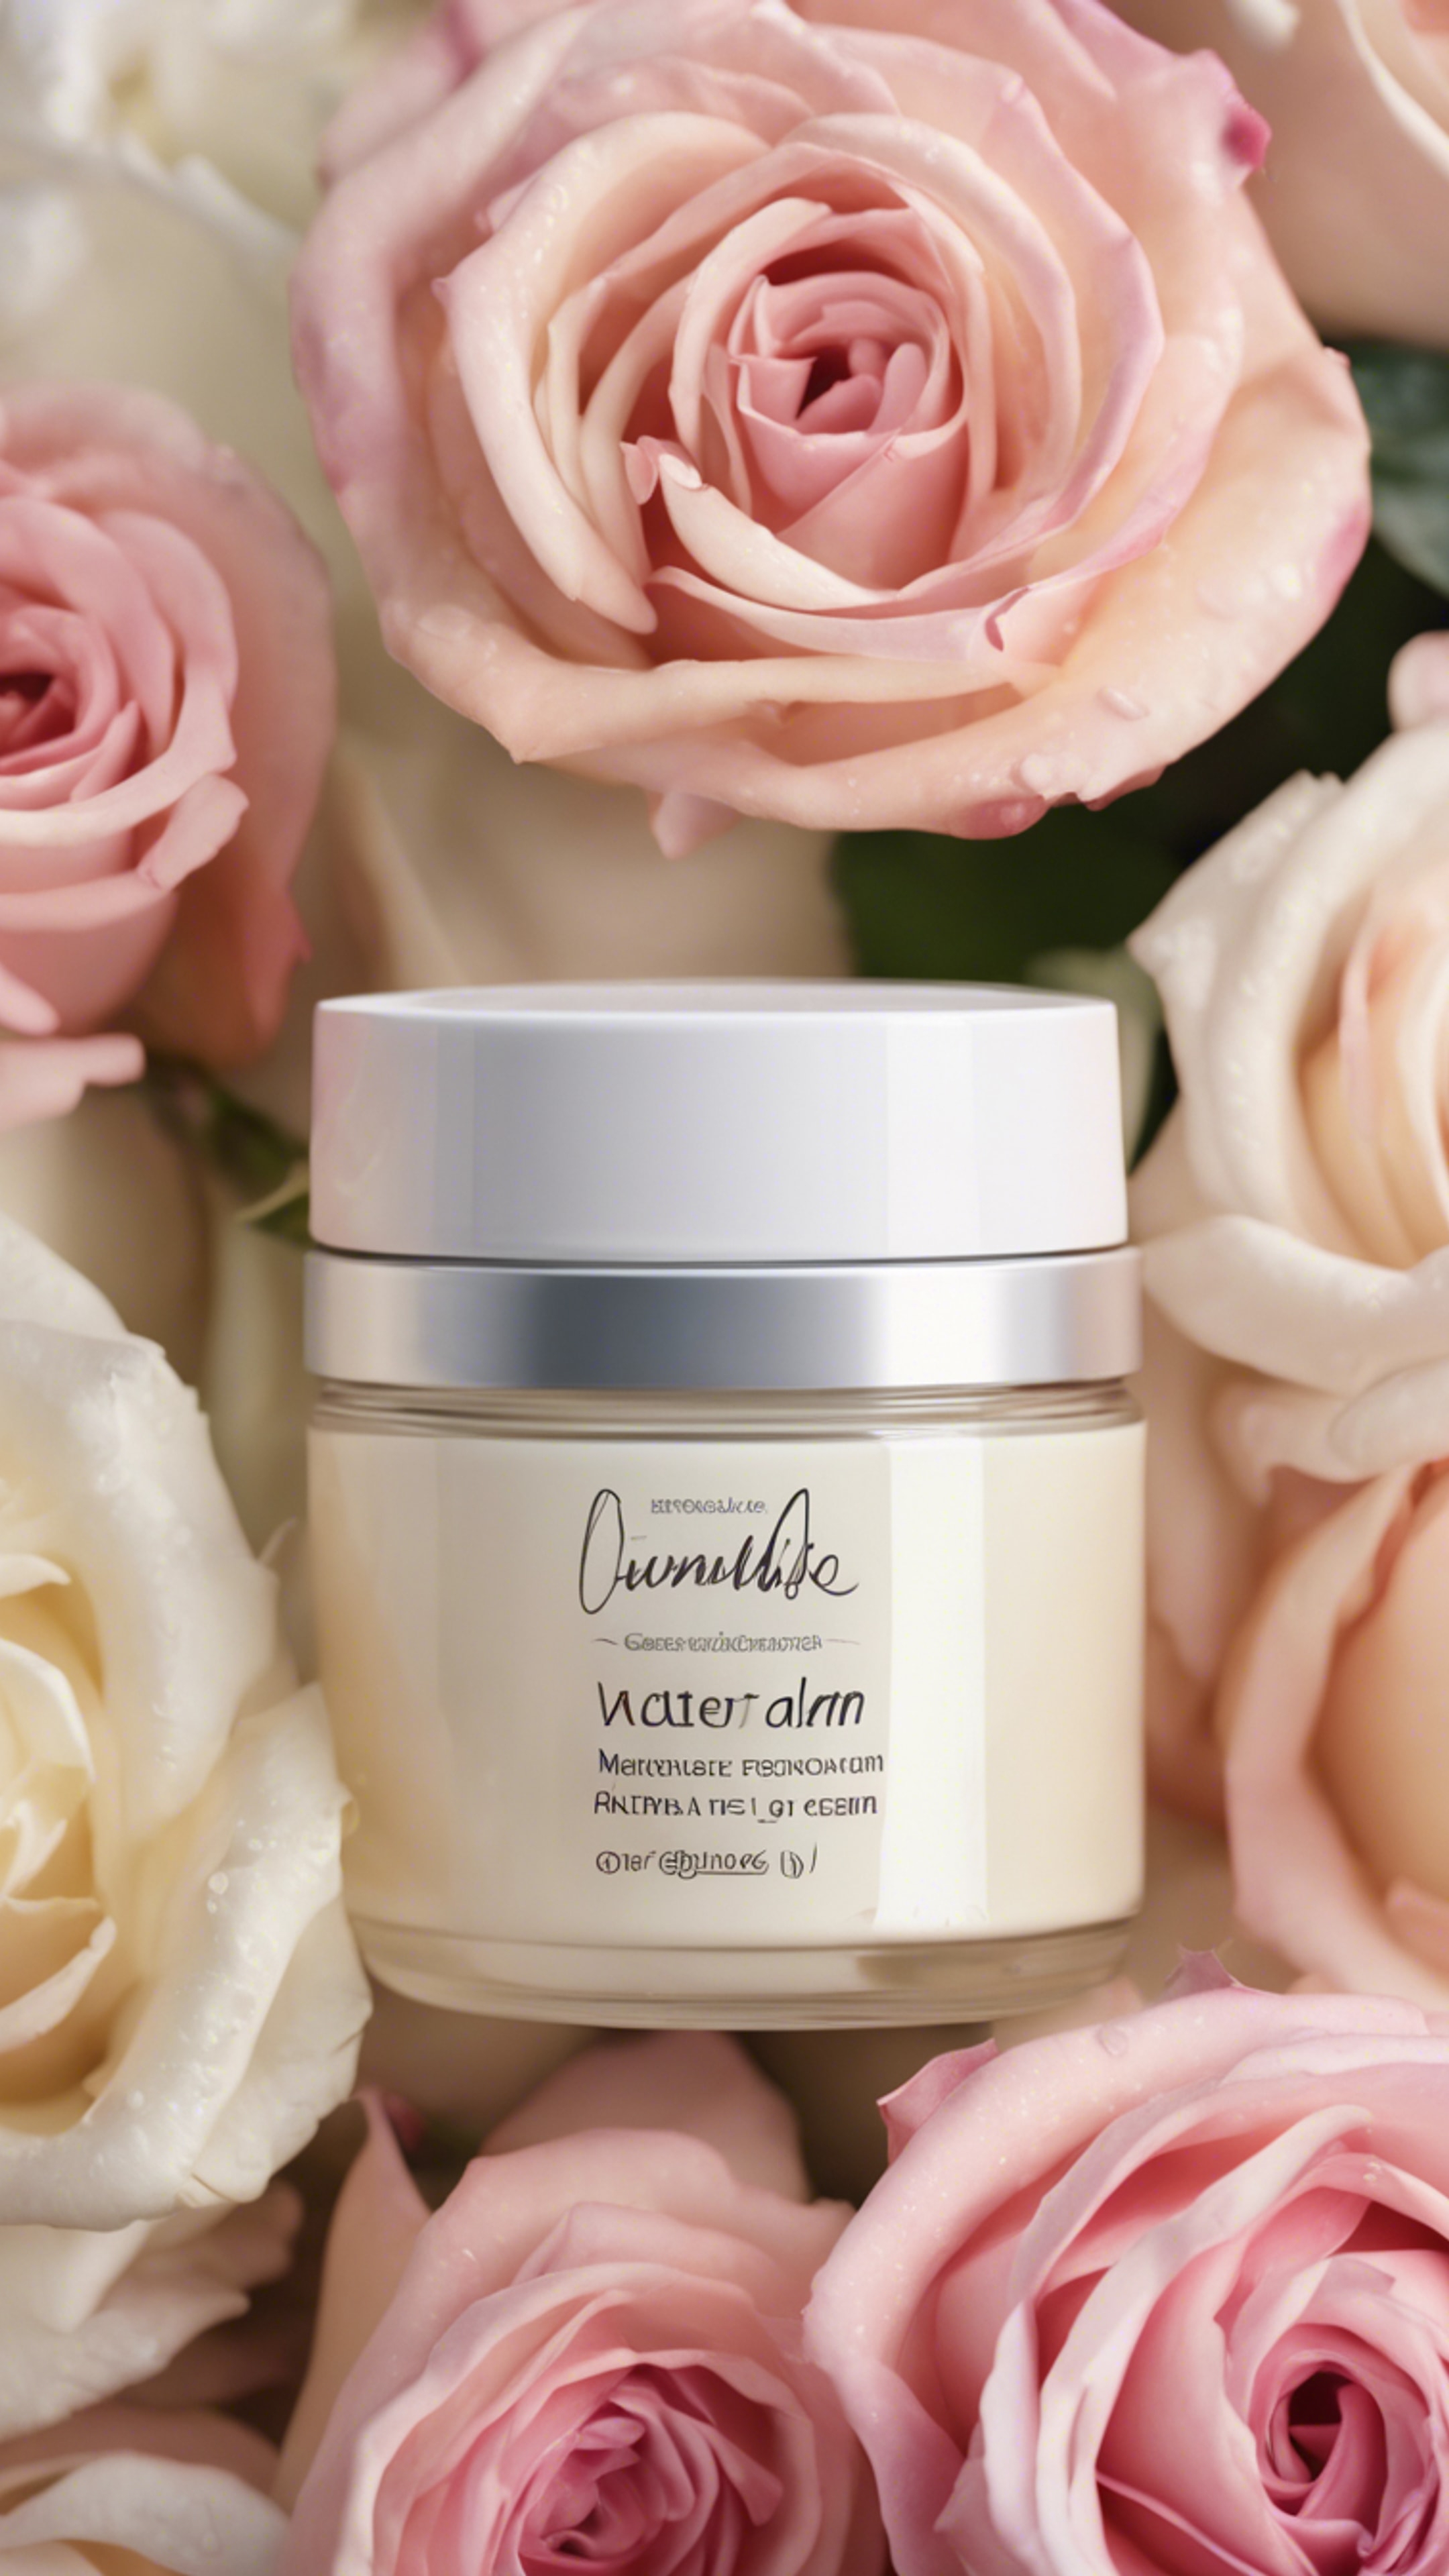 A jar of natural, luxurious, moisture-rich face cream placed amidst fresh roses. duvar kağıdı[b9b99bd6ea5043dab5cc]